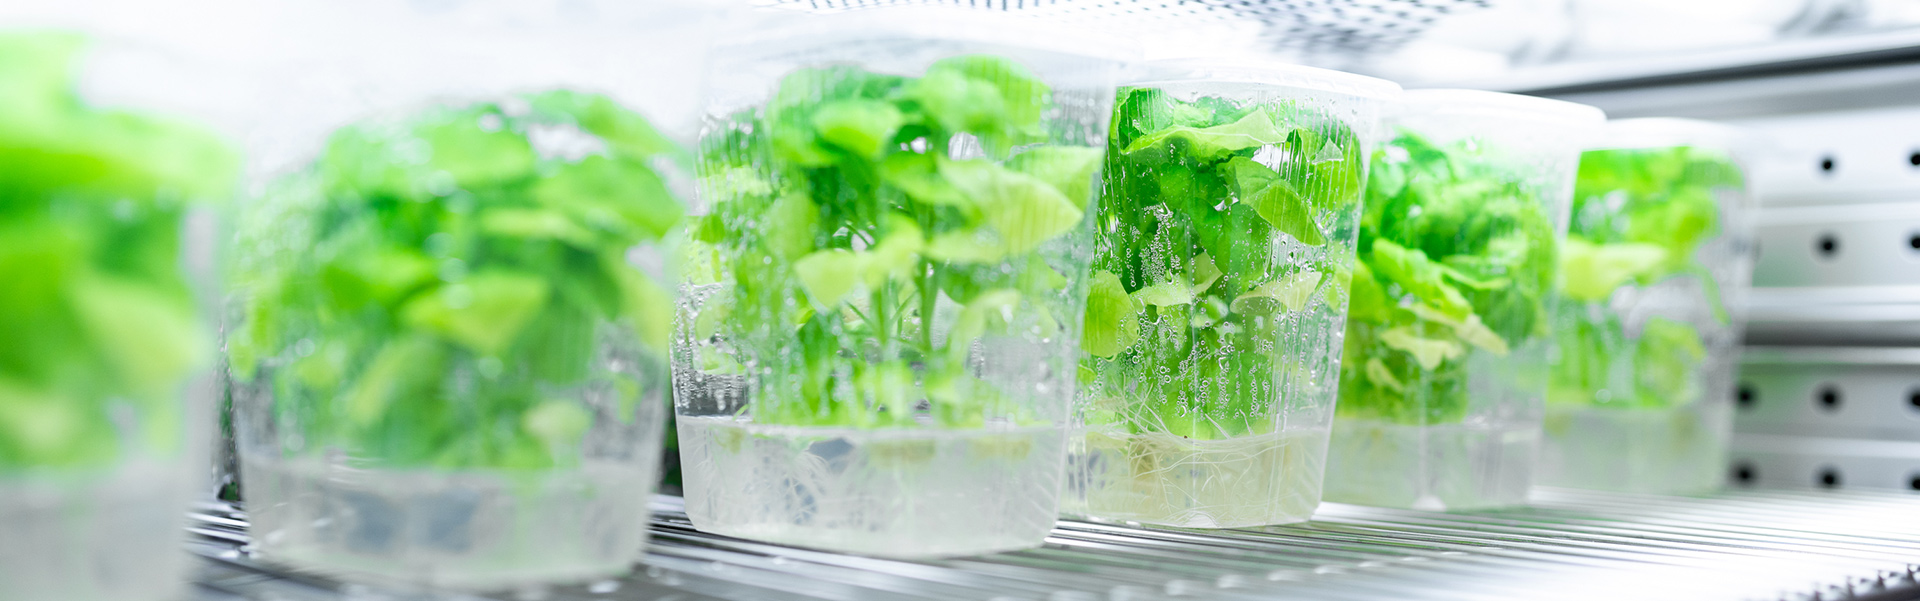 Master Biotechnologie & angewandte Ökologie: Pflanzen in Aufzuchtglas